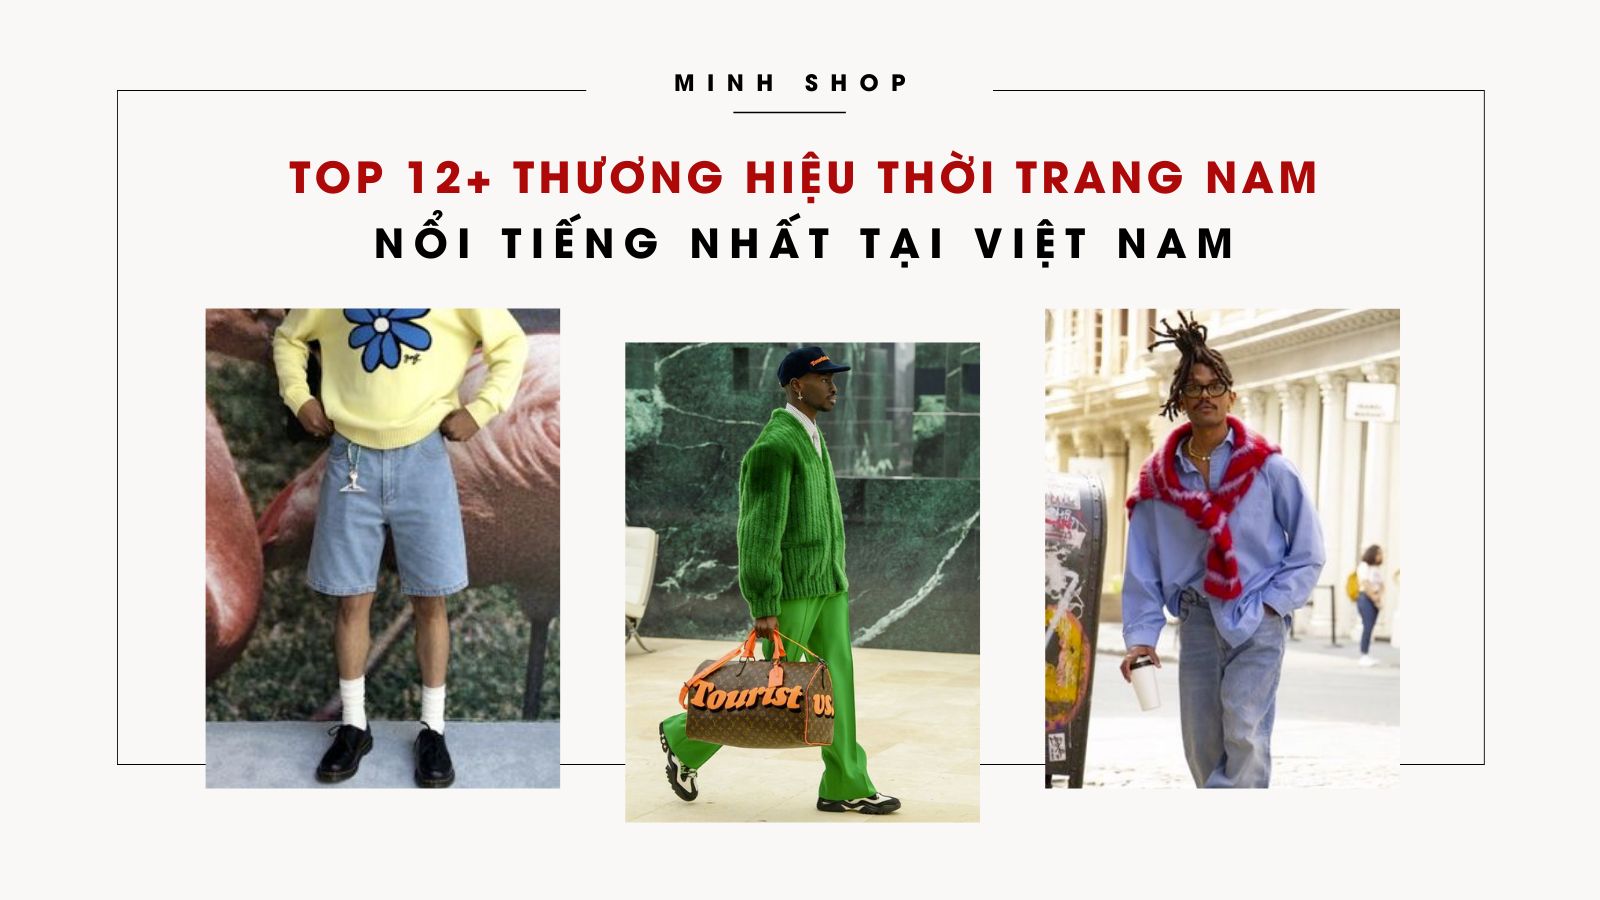 TOP 12+ Thương Hiệu Thời Trang Nam Nổi Tiếng Nhất Tại Việt Nam